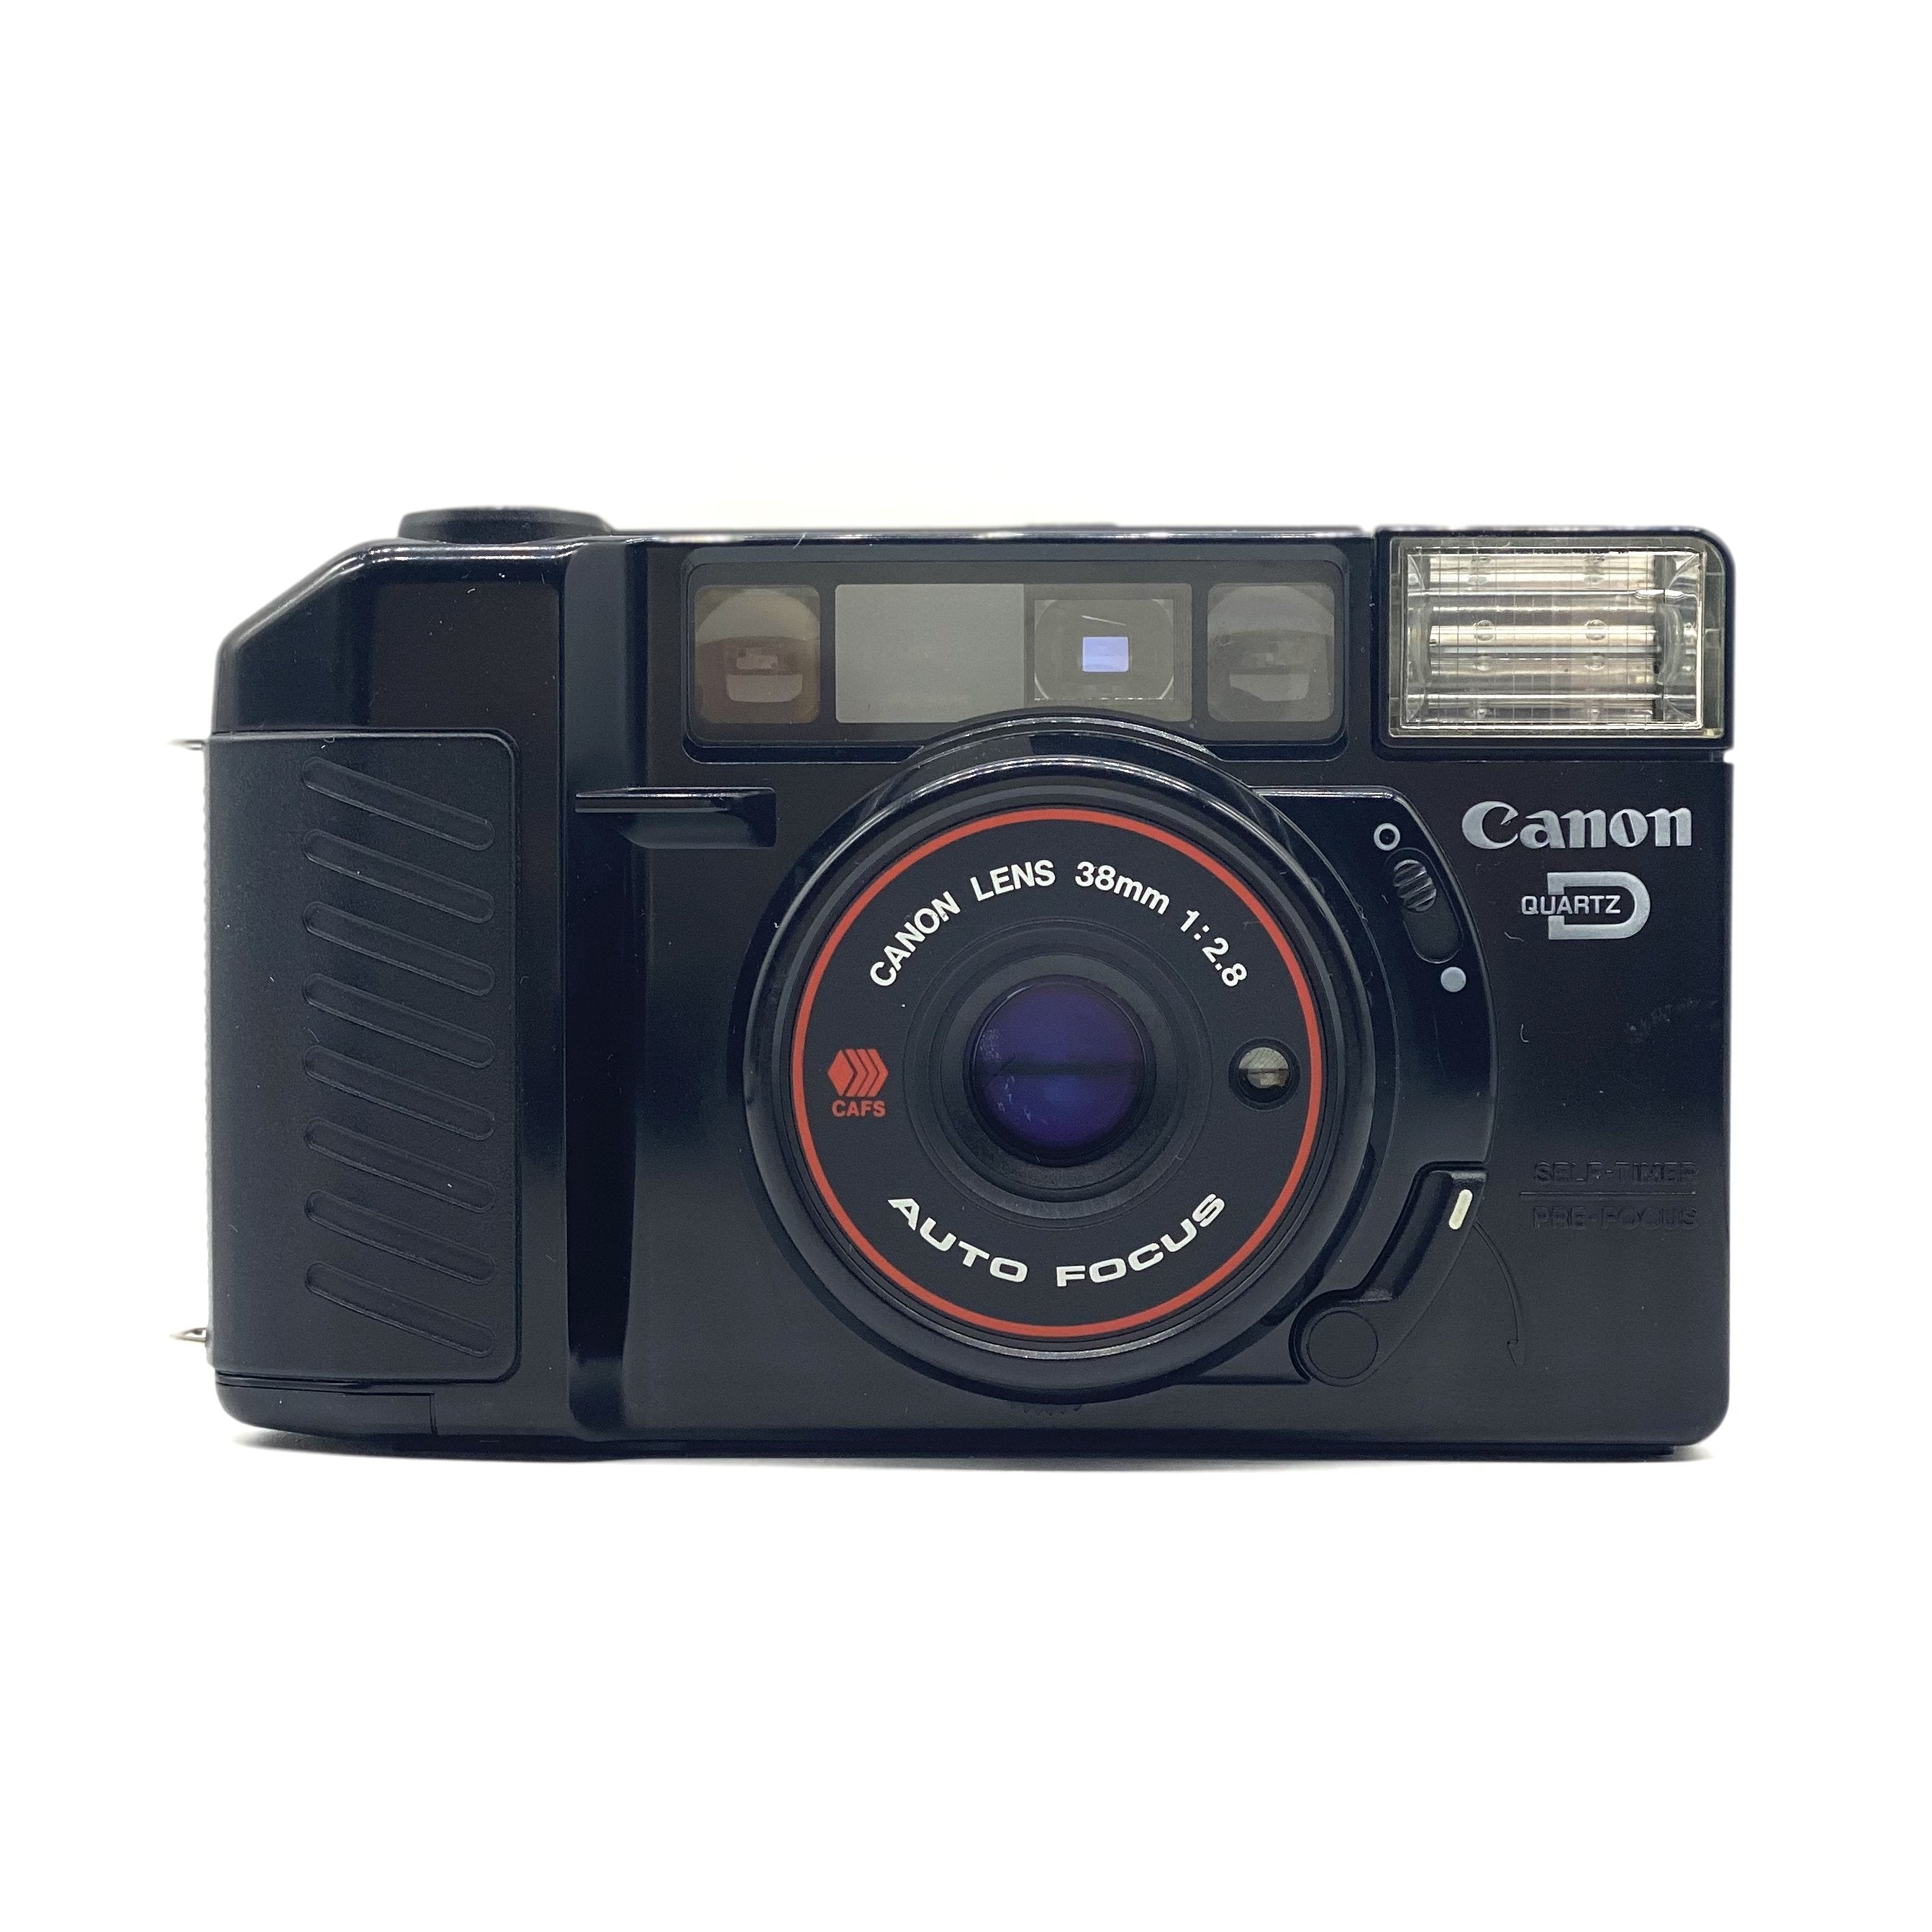 Canon Autoboy 2 Quartz Date – Coolc Camera